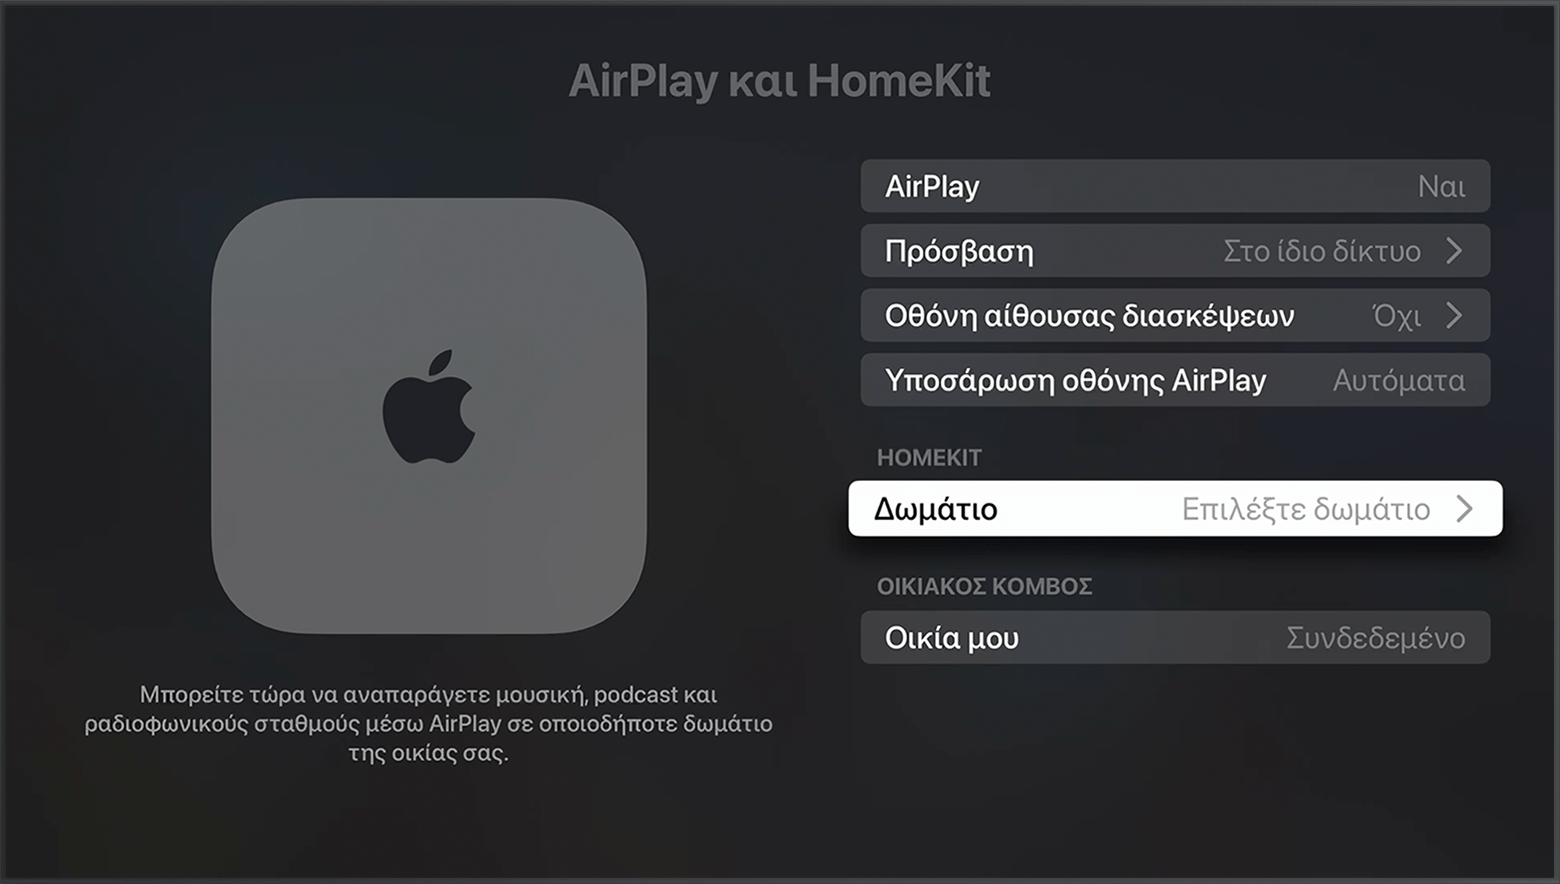 Η επιλογή «Δωμάτιο» εμφανίζεται κάτω από το HomeKit στην οθόνη «AirPlay και HomeKit» στις ρυθμίσεις του Apple TV